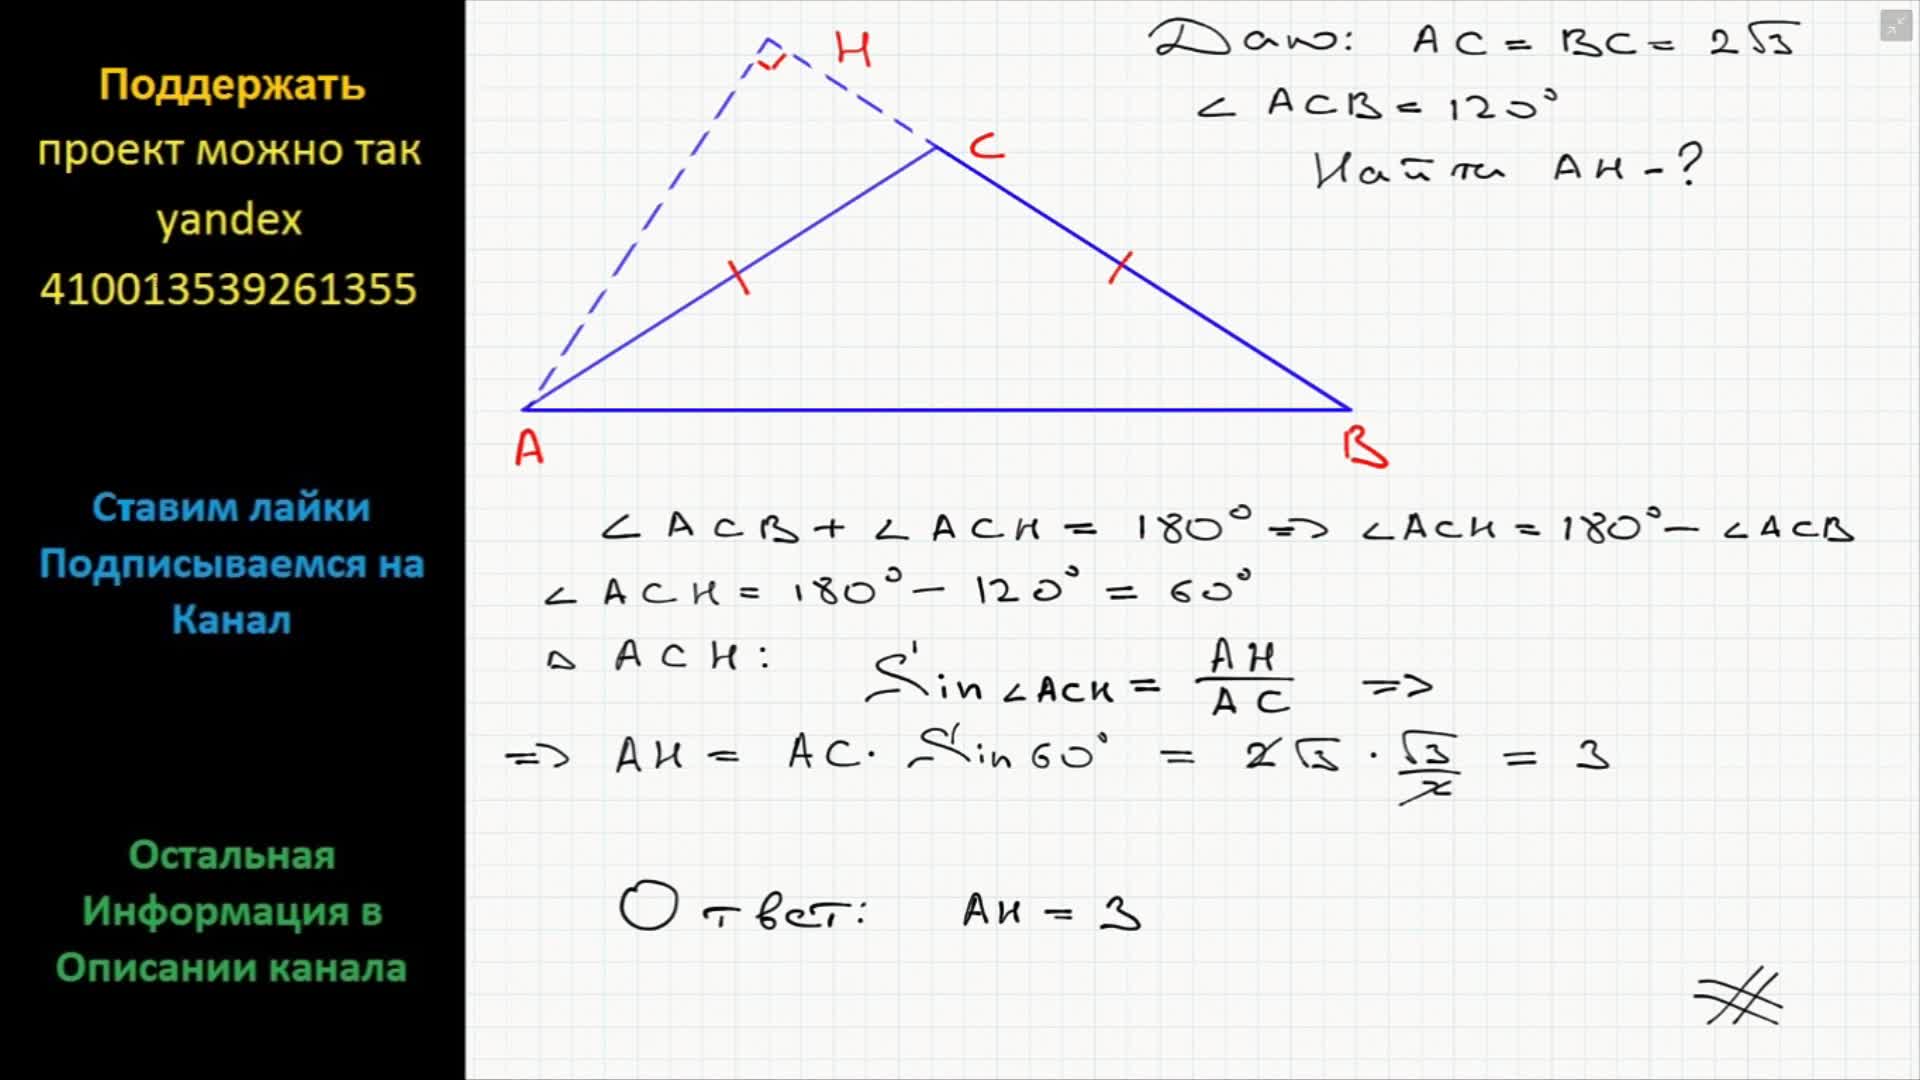 В треугольнике абс угол б 120. Угол противолежащий основанию равнобедренного треугольника. Угол противолежащий основанию равнобедренного треугольника 120. Угол,противолежащий оснваниюравнобедренного треугольника Раве 120. Угол противолежащий основанию равнобедренного треугольника равен 120.